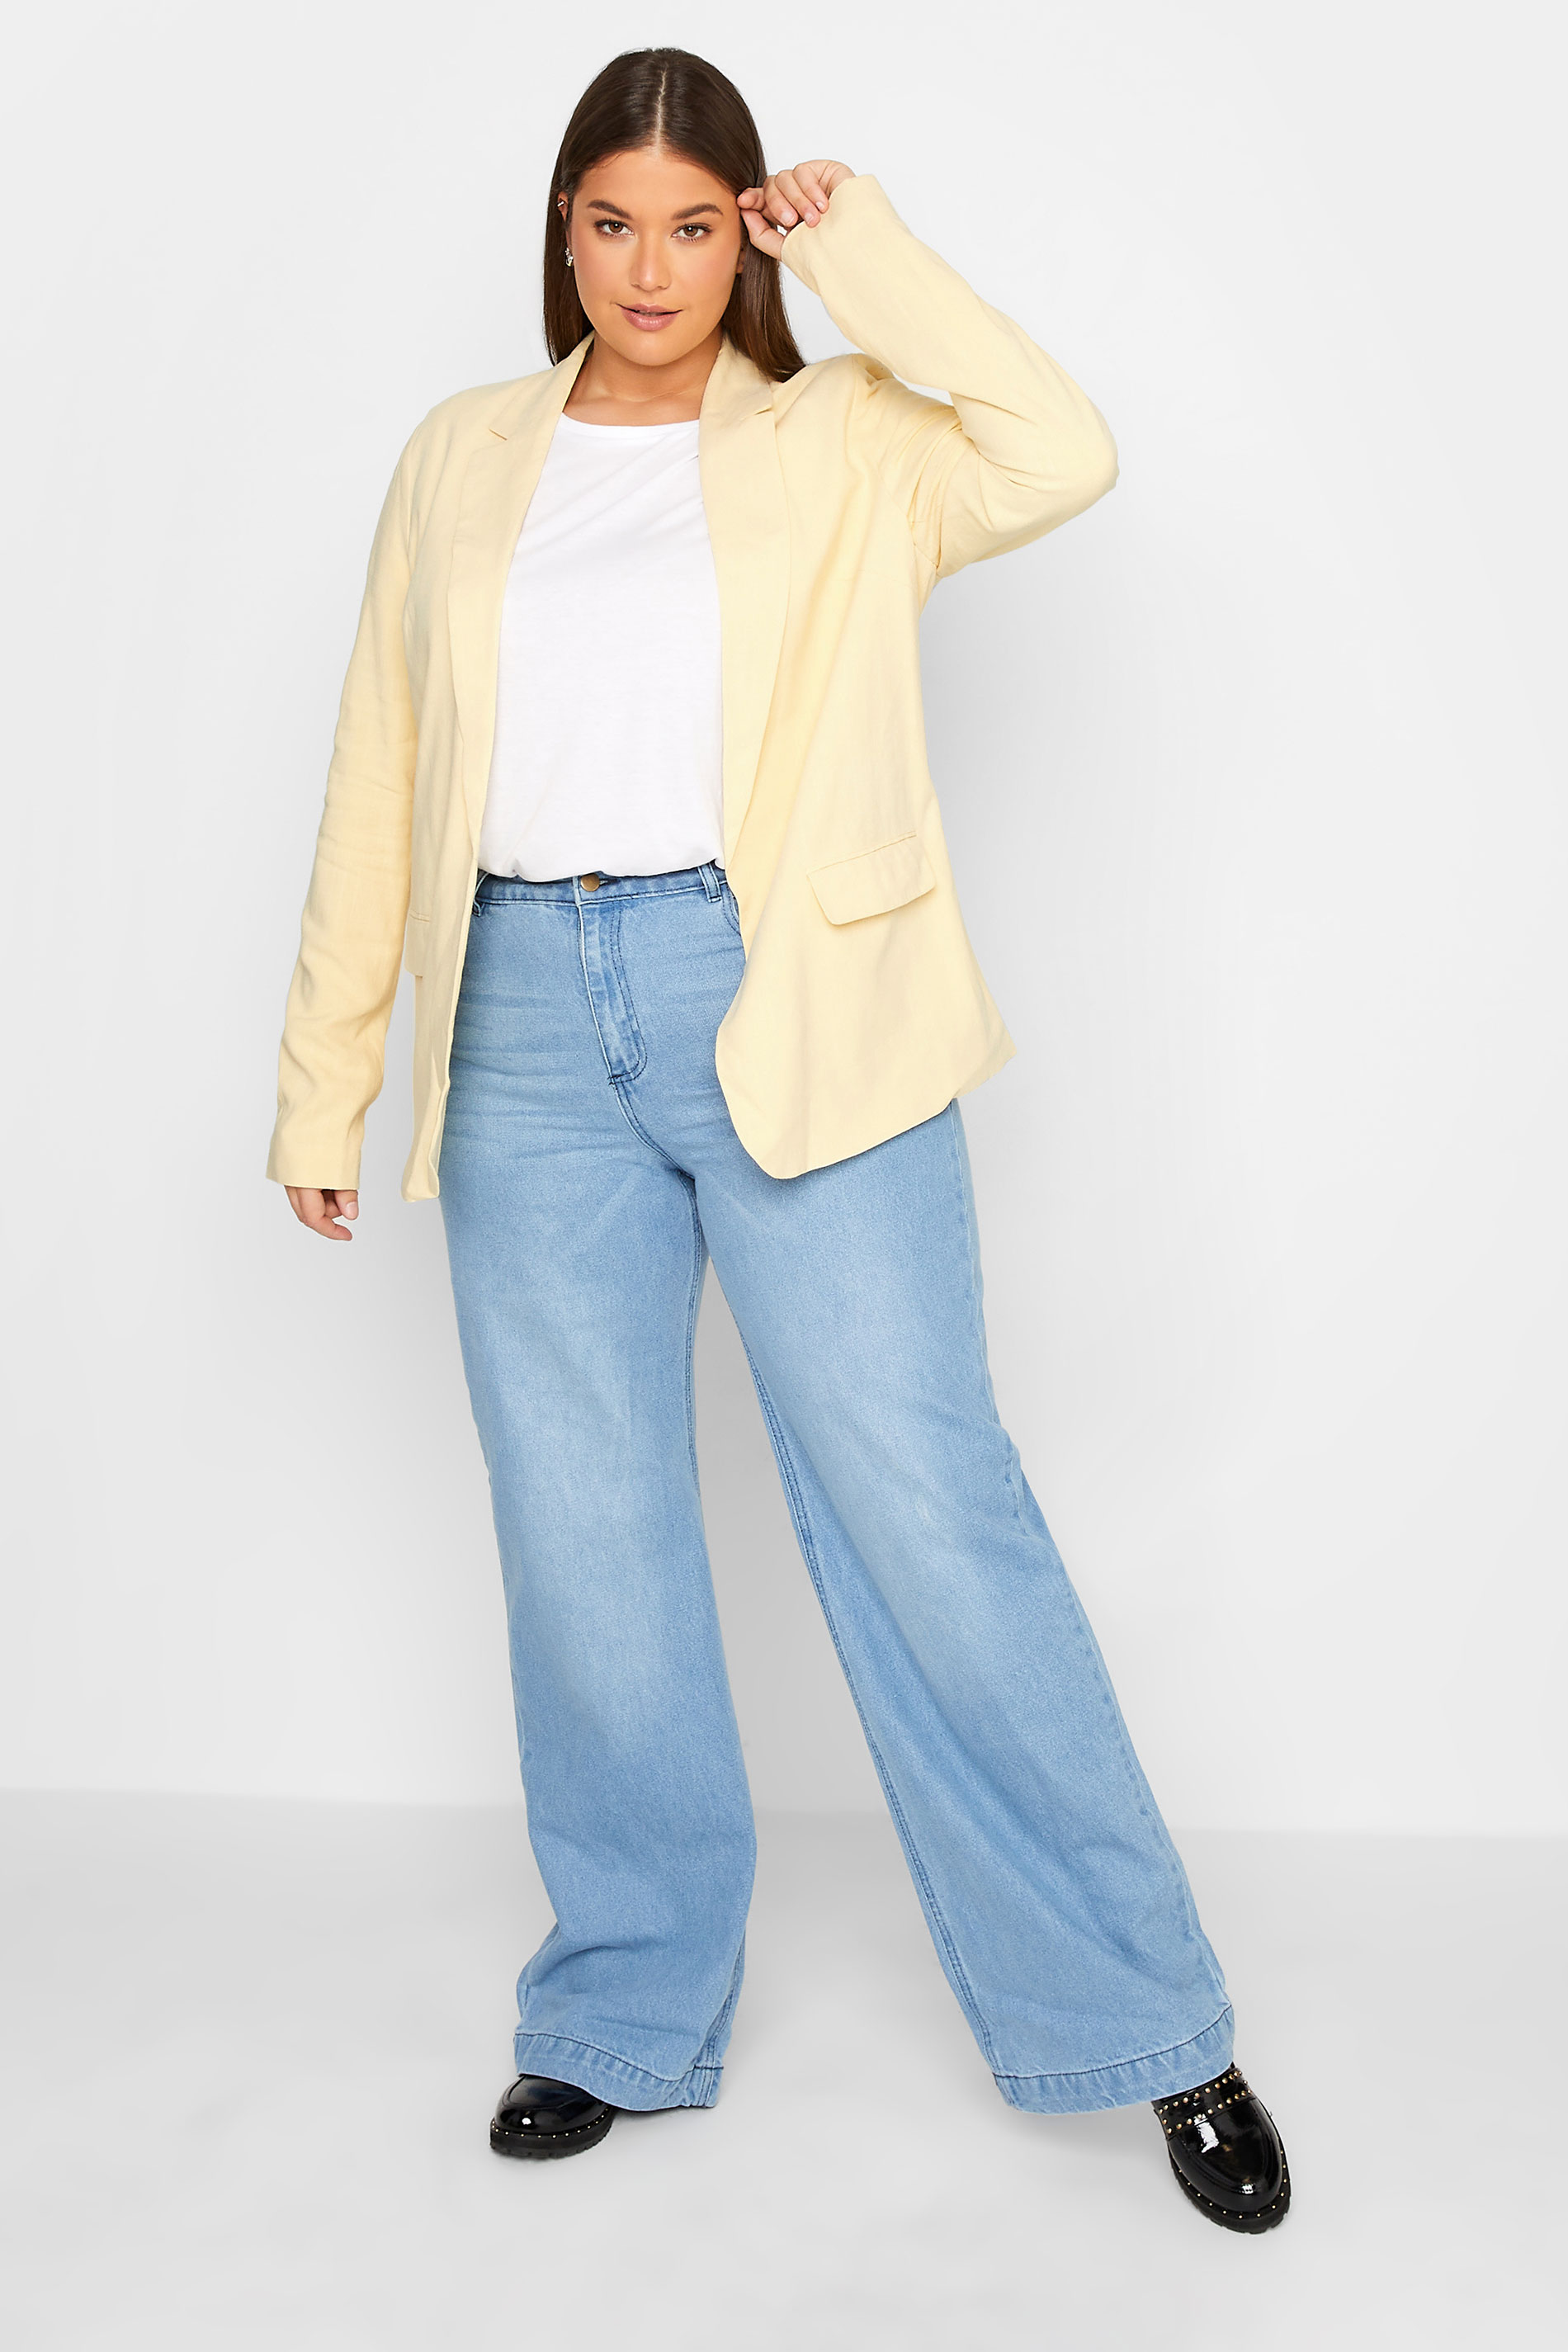 LTS Tall Women's Lemon Yellow Linen Look Blazer | Long Tall Sally  2